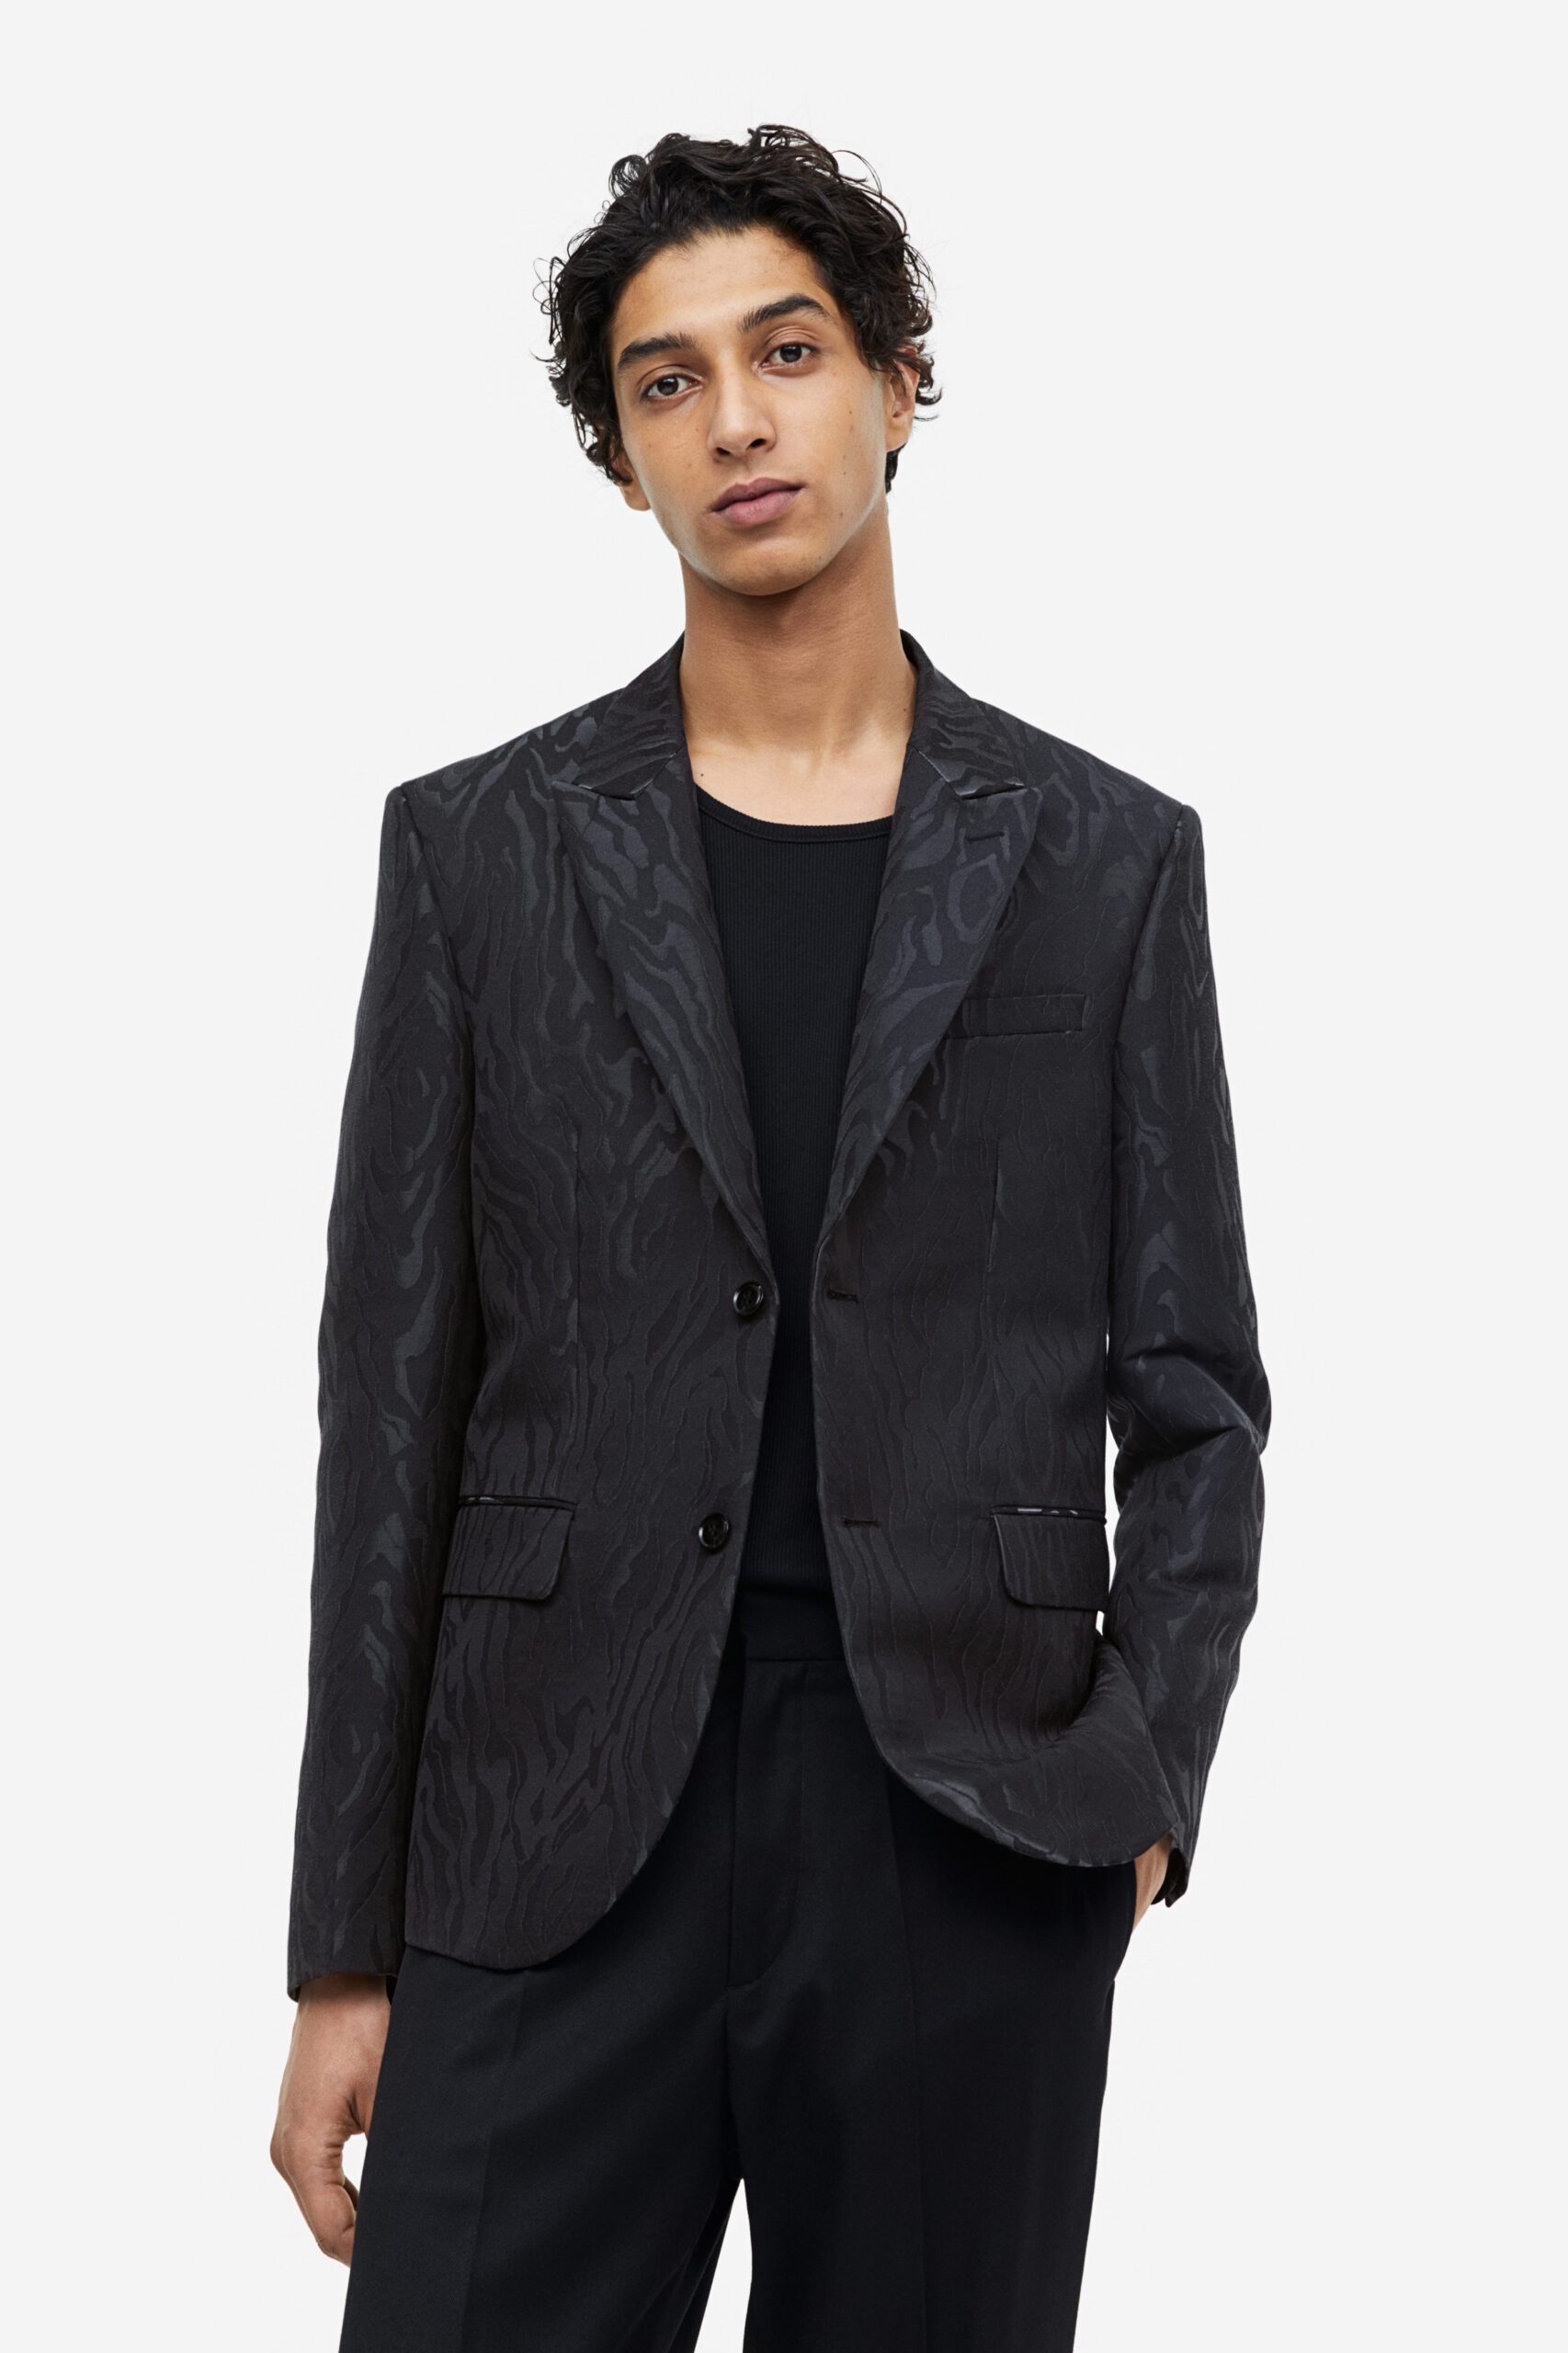 Black suit for men